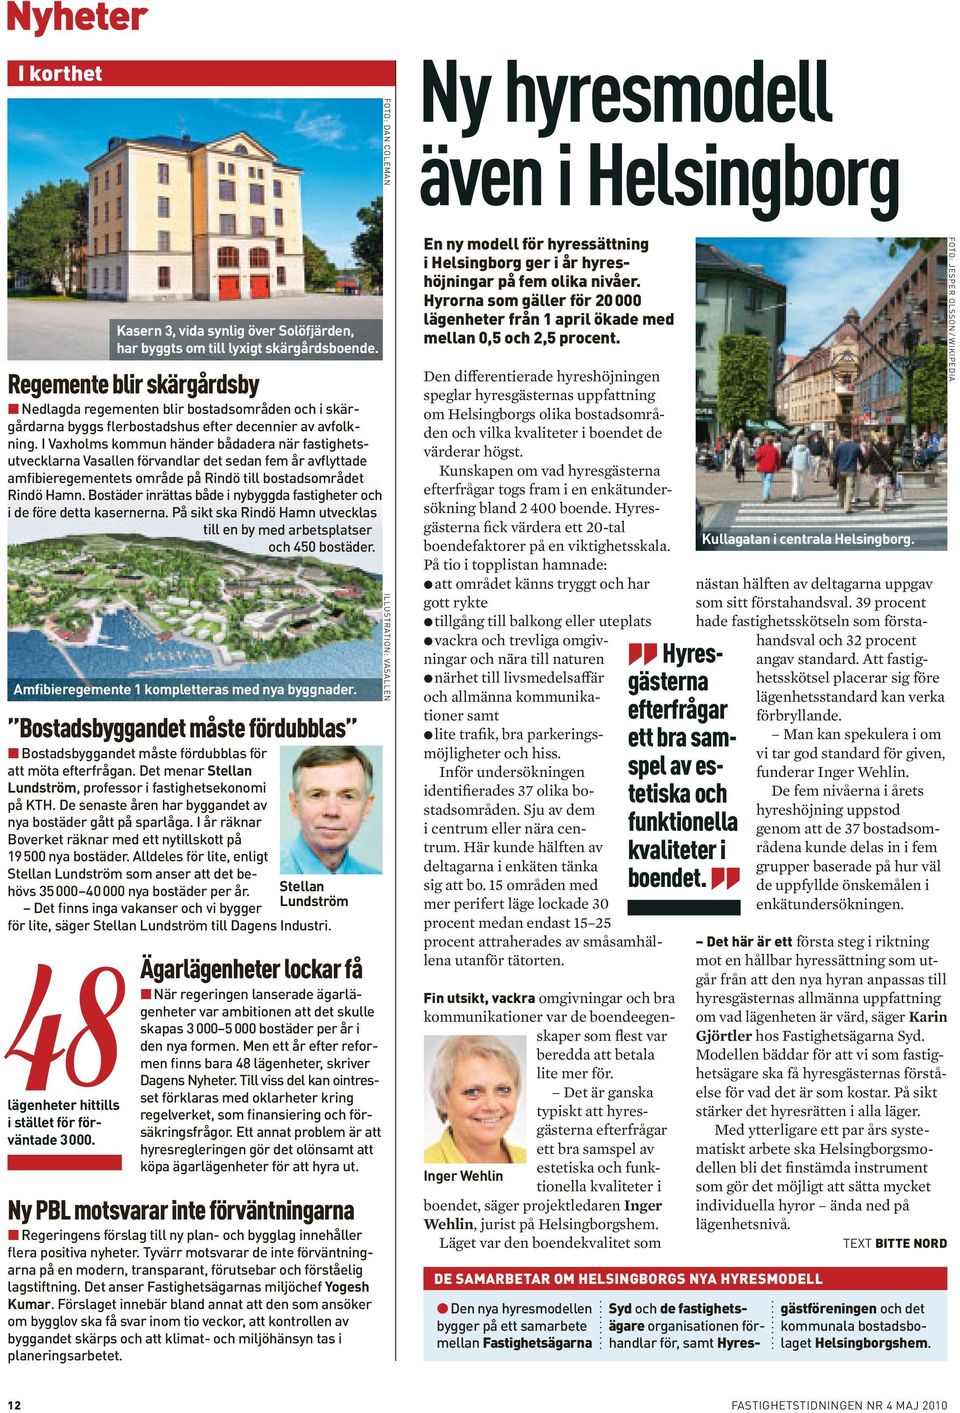 I Vaxholms kommun händer bådadera när fastighetsutvecklarna Vasallen förvandlar det sedan fem år avflyttade amfibieregementets område på Rindö till bostadsområdet Rindö Hamn.